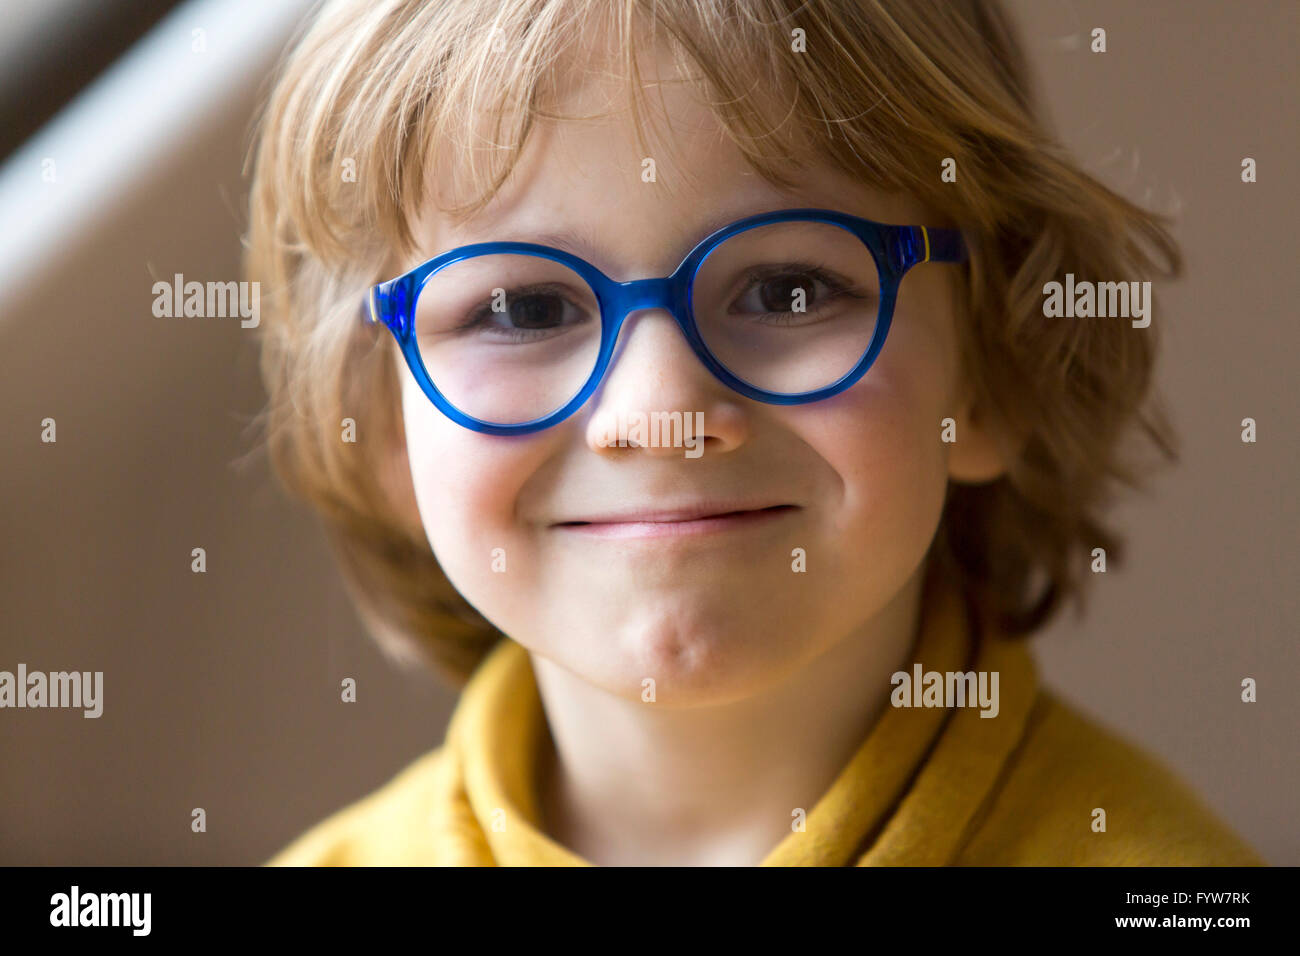 Jeune garçon, 6 ans, a l'air sympa, les sourires, avec des lunettes, avec un cadre bleu, Banque D'Images